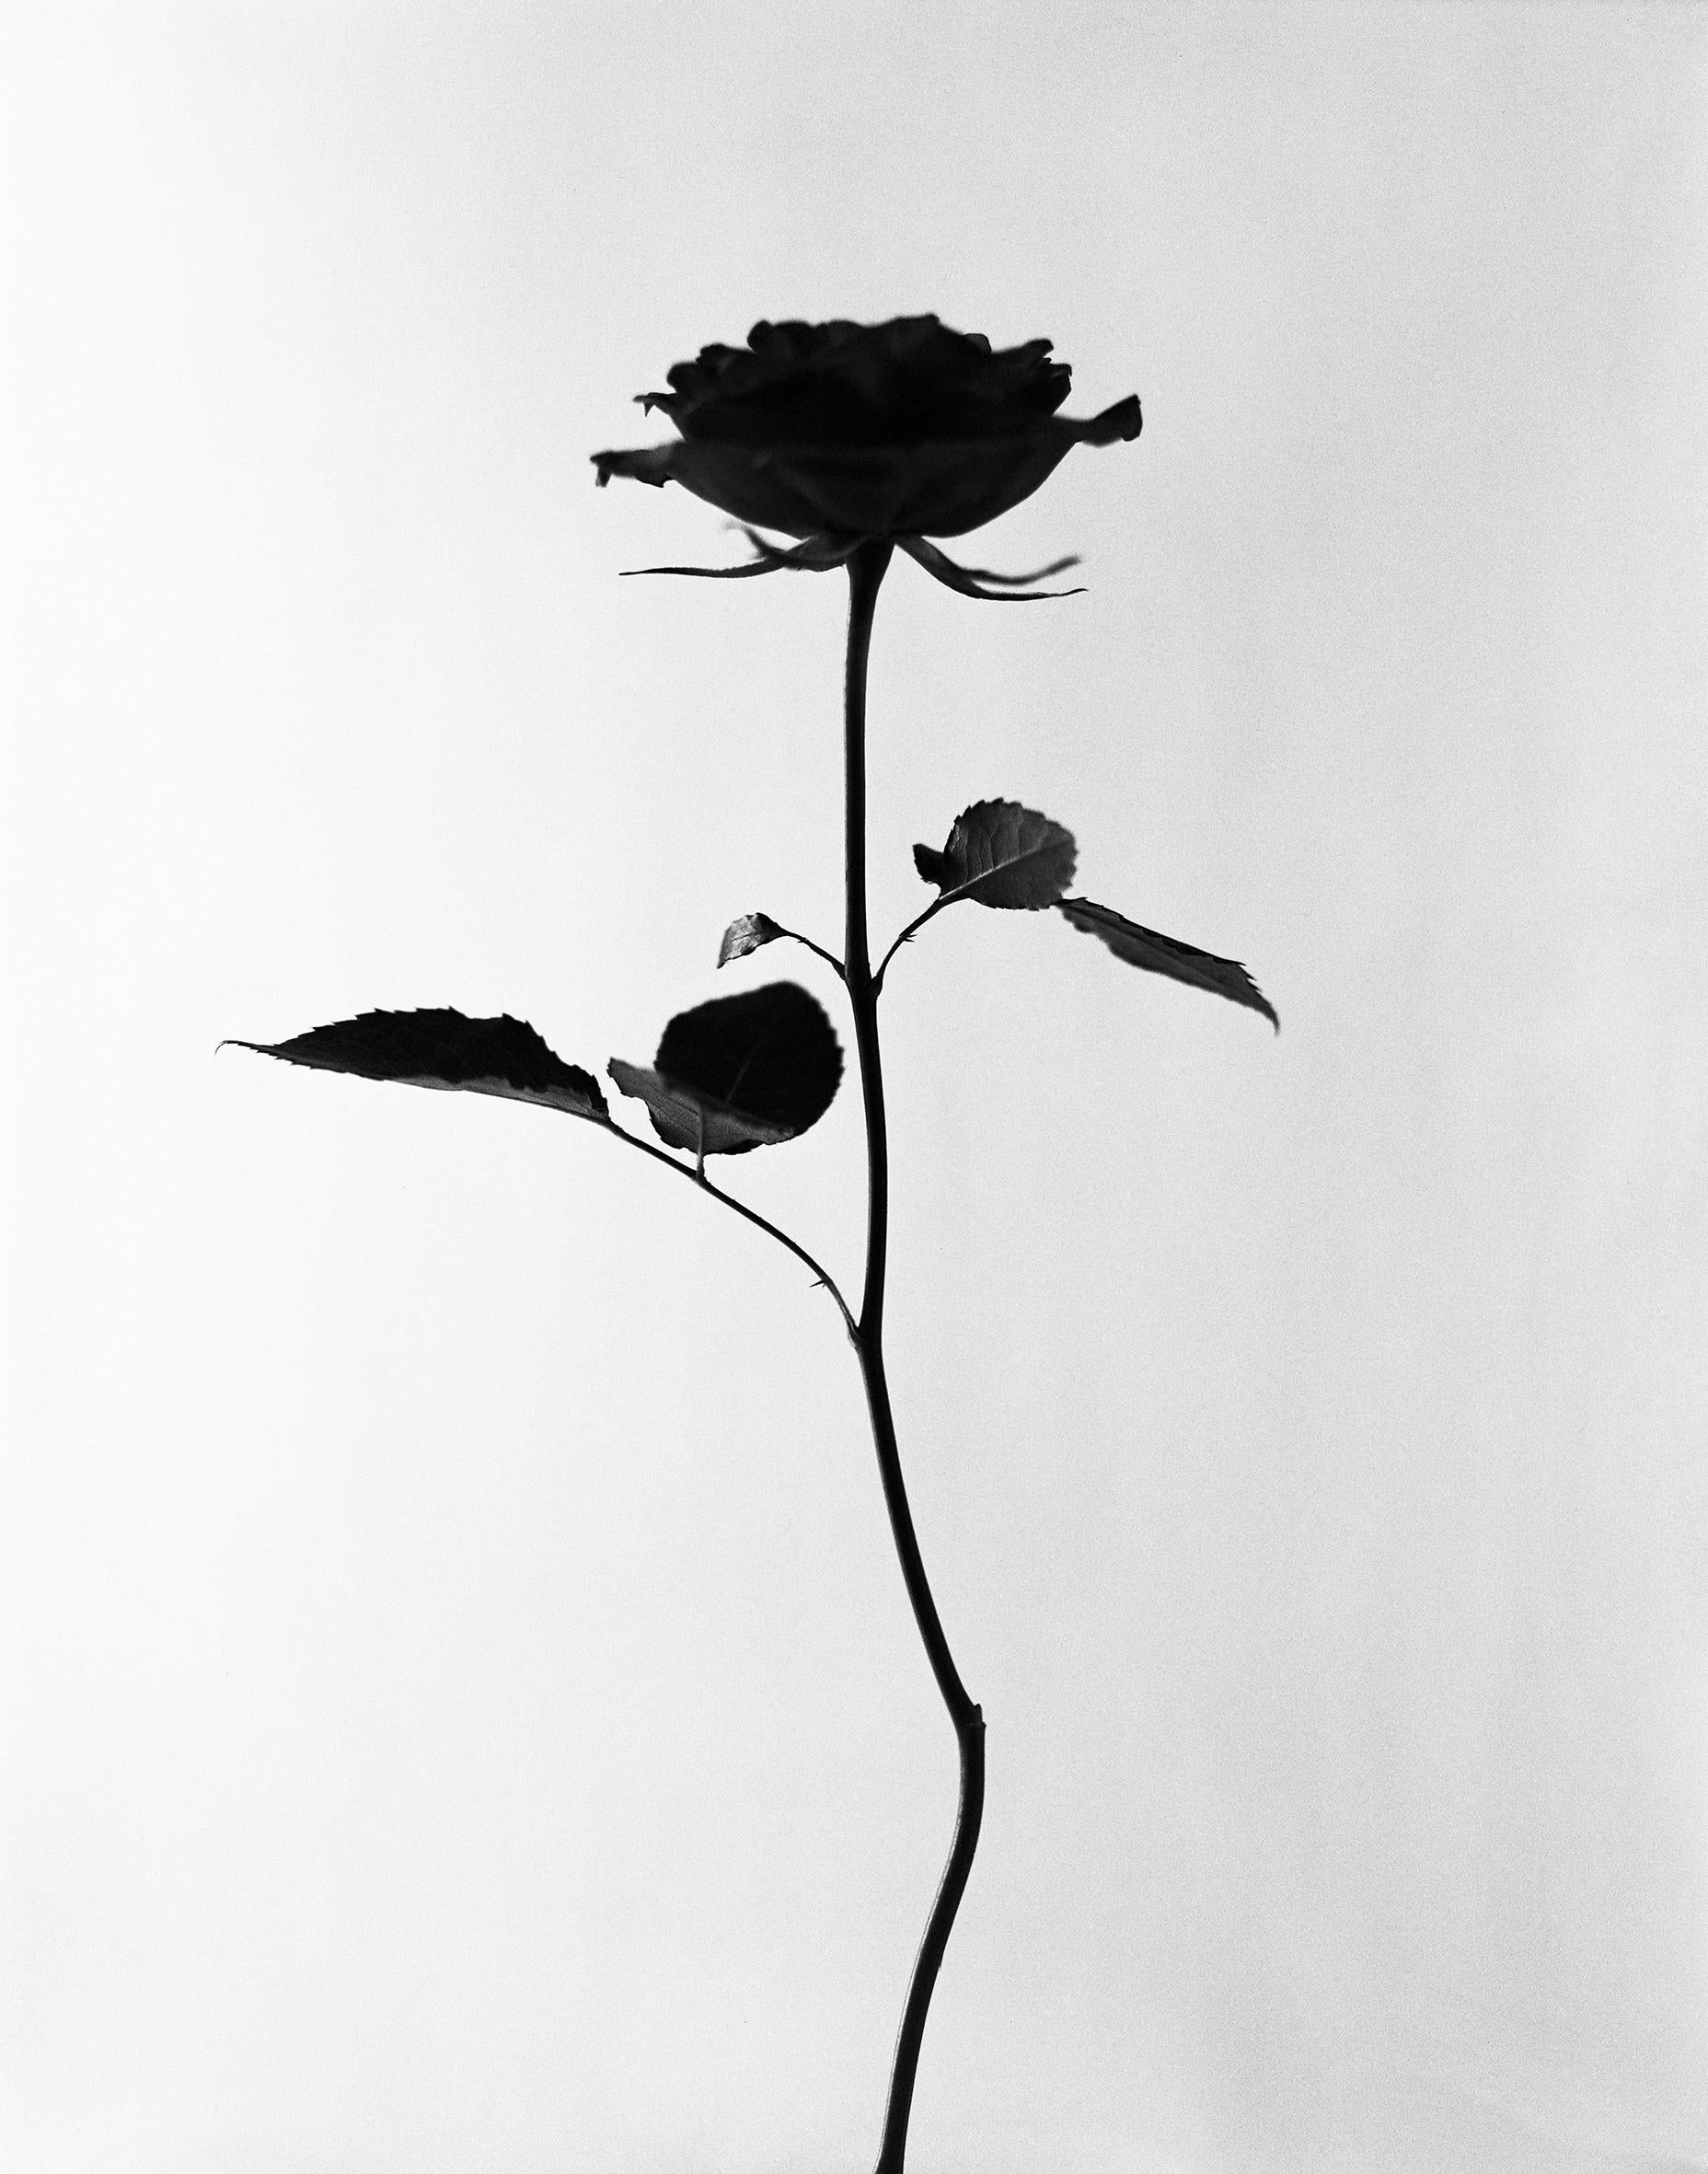 Ugne Pouwell Black and White Photograph – Schwarz-Weiß-Blumenfotografie „Black Rose“ – schwarz-weiße Blumenfotografie, limitierte Auflage von 20 Stück